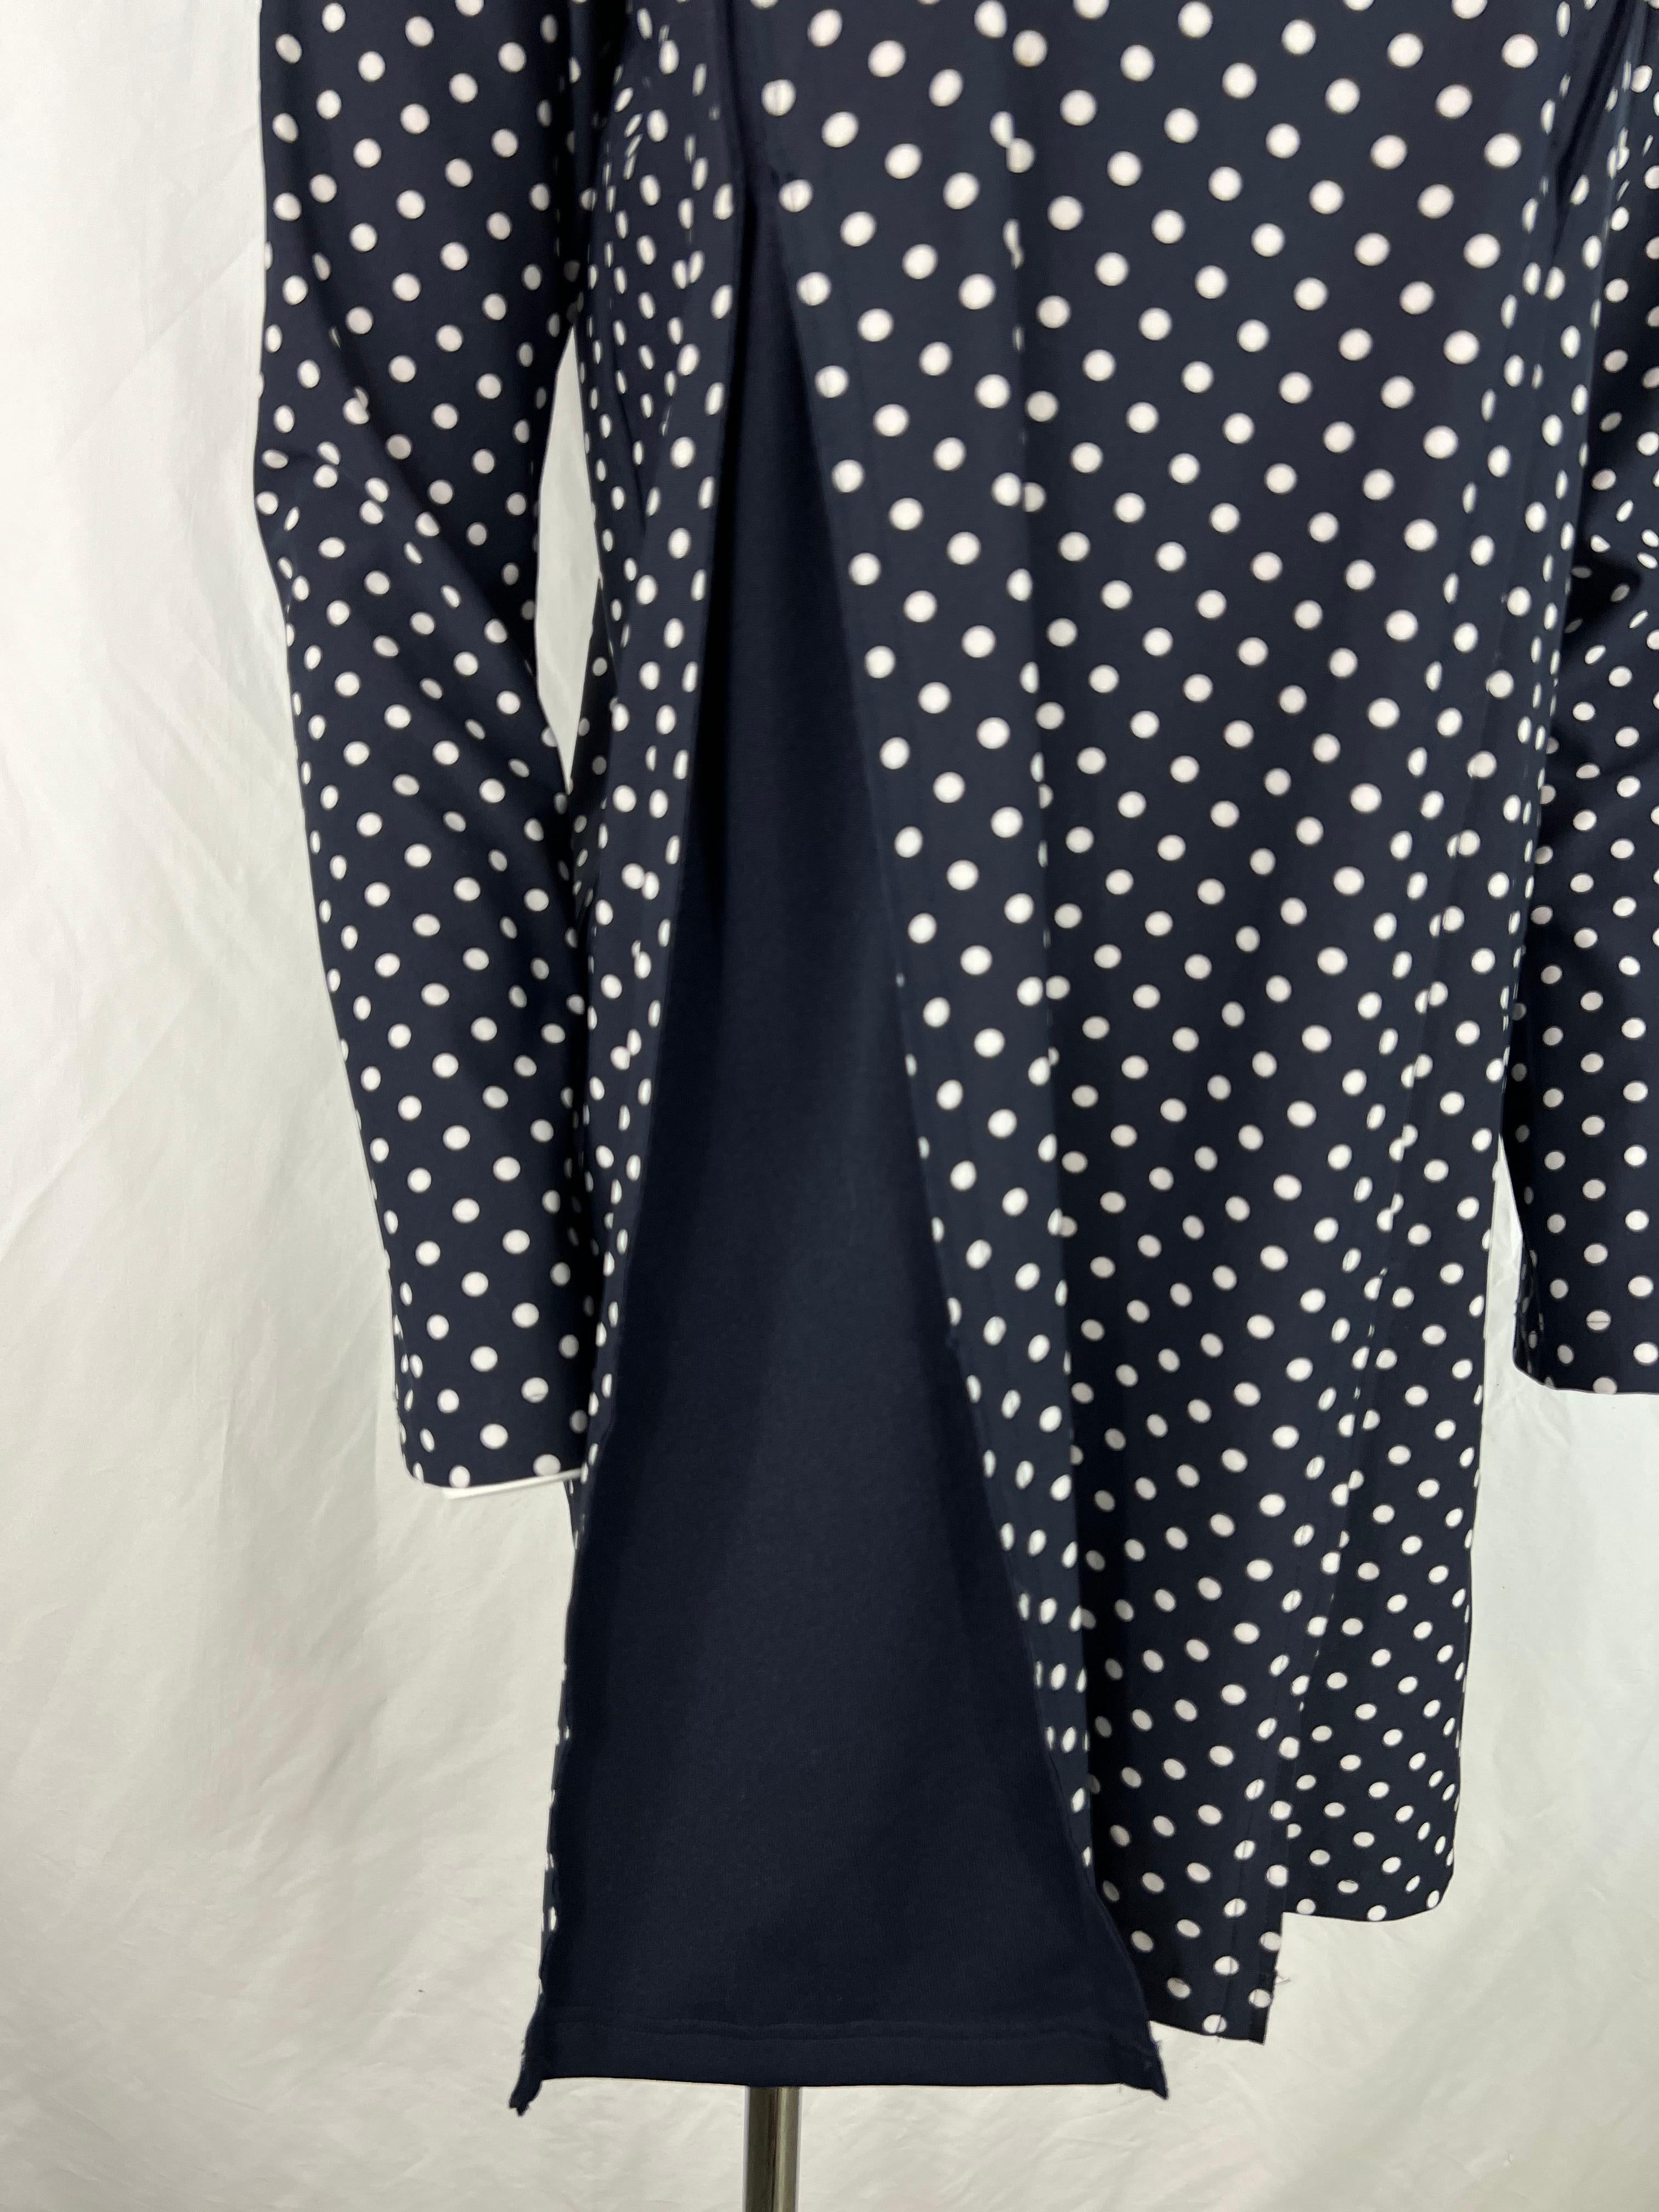 Einzelheiten zum Produkt:

Das Kleid hat ein blau-weißes Tupfenmuster, lange Ärmel, einen Rundhalsausschnitt und einen ausgestellten Rockteil.